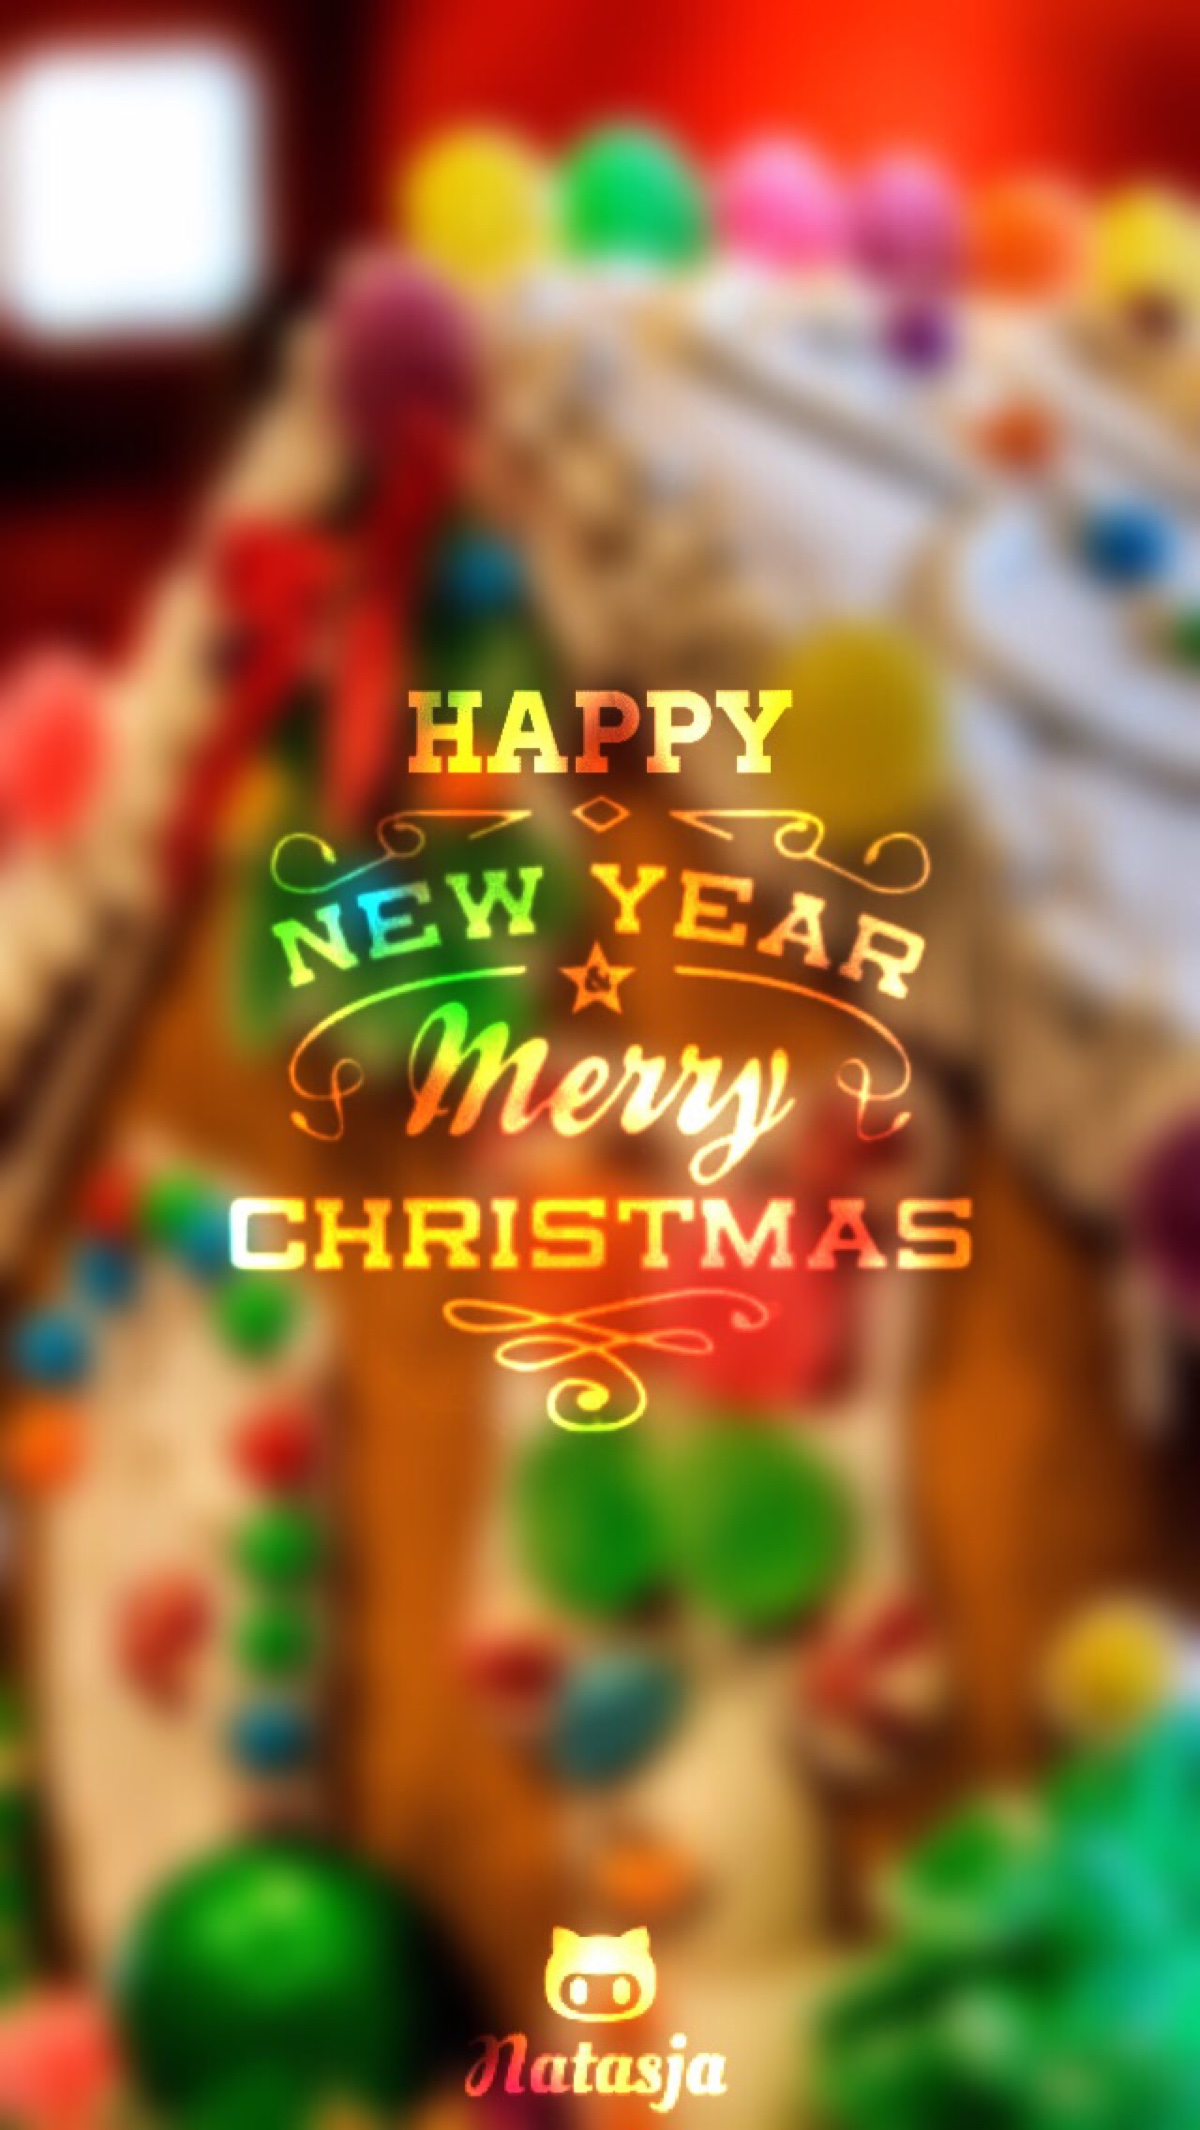 merry christmas 祝你圣诞快乐 2015堆圣诞 原创自制壁纸 文字 句子